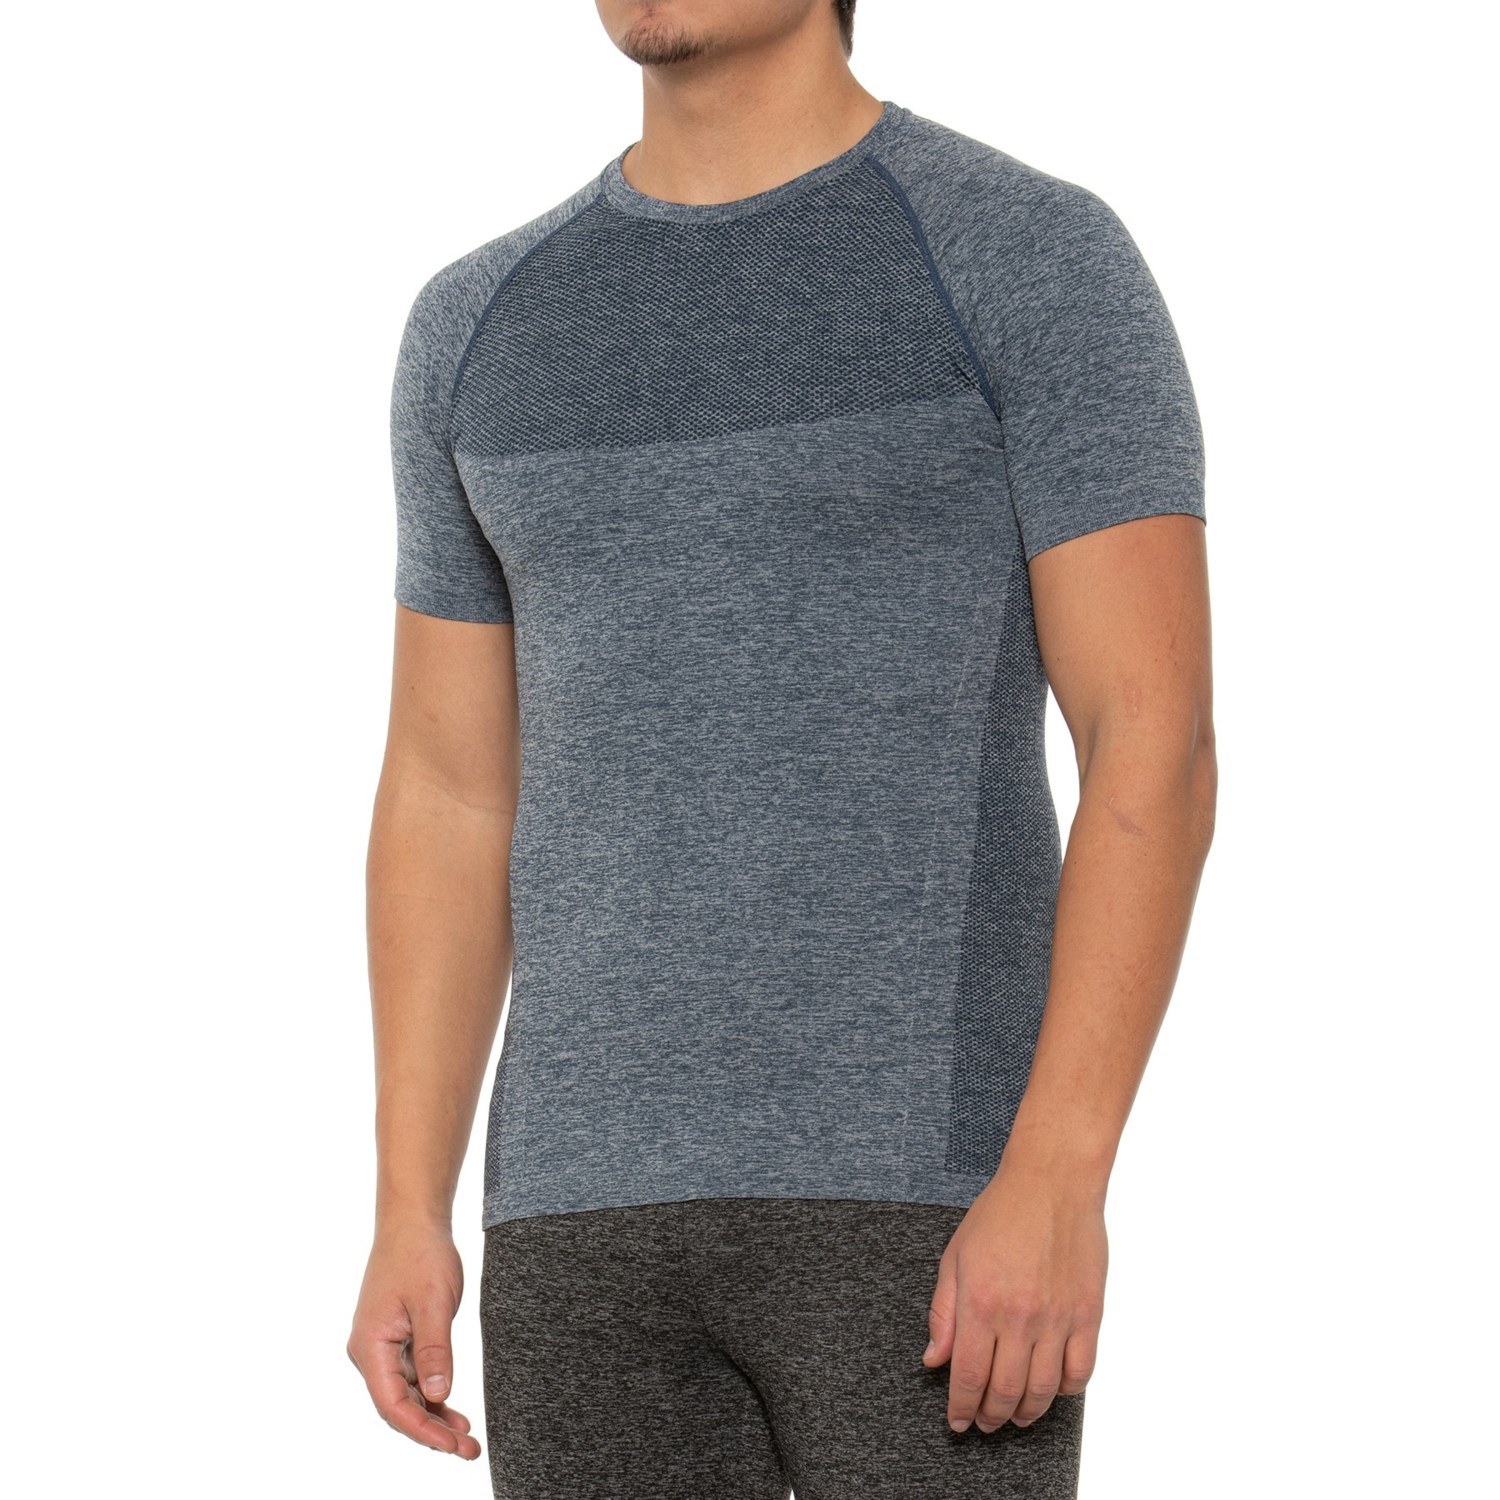 Kyodan Melange Seamless T-Shirt (For Men) - Save 35%